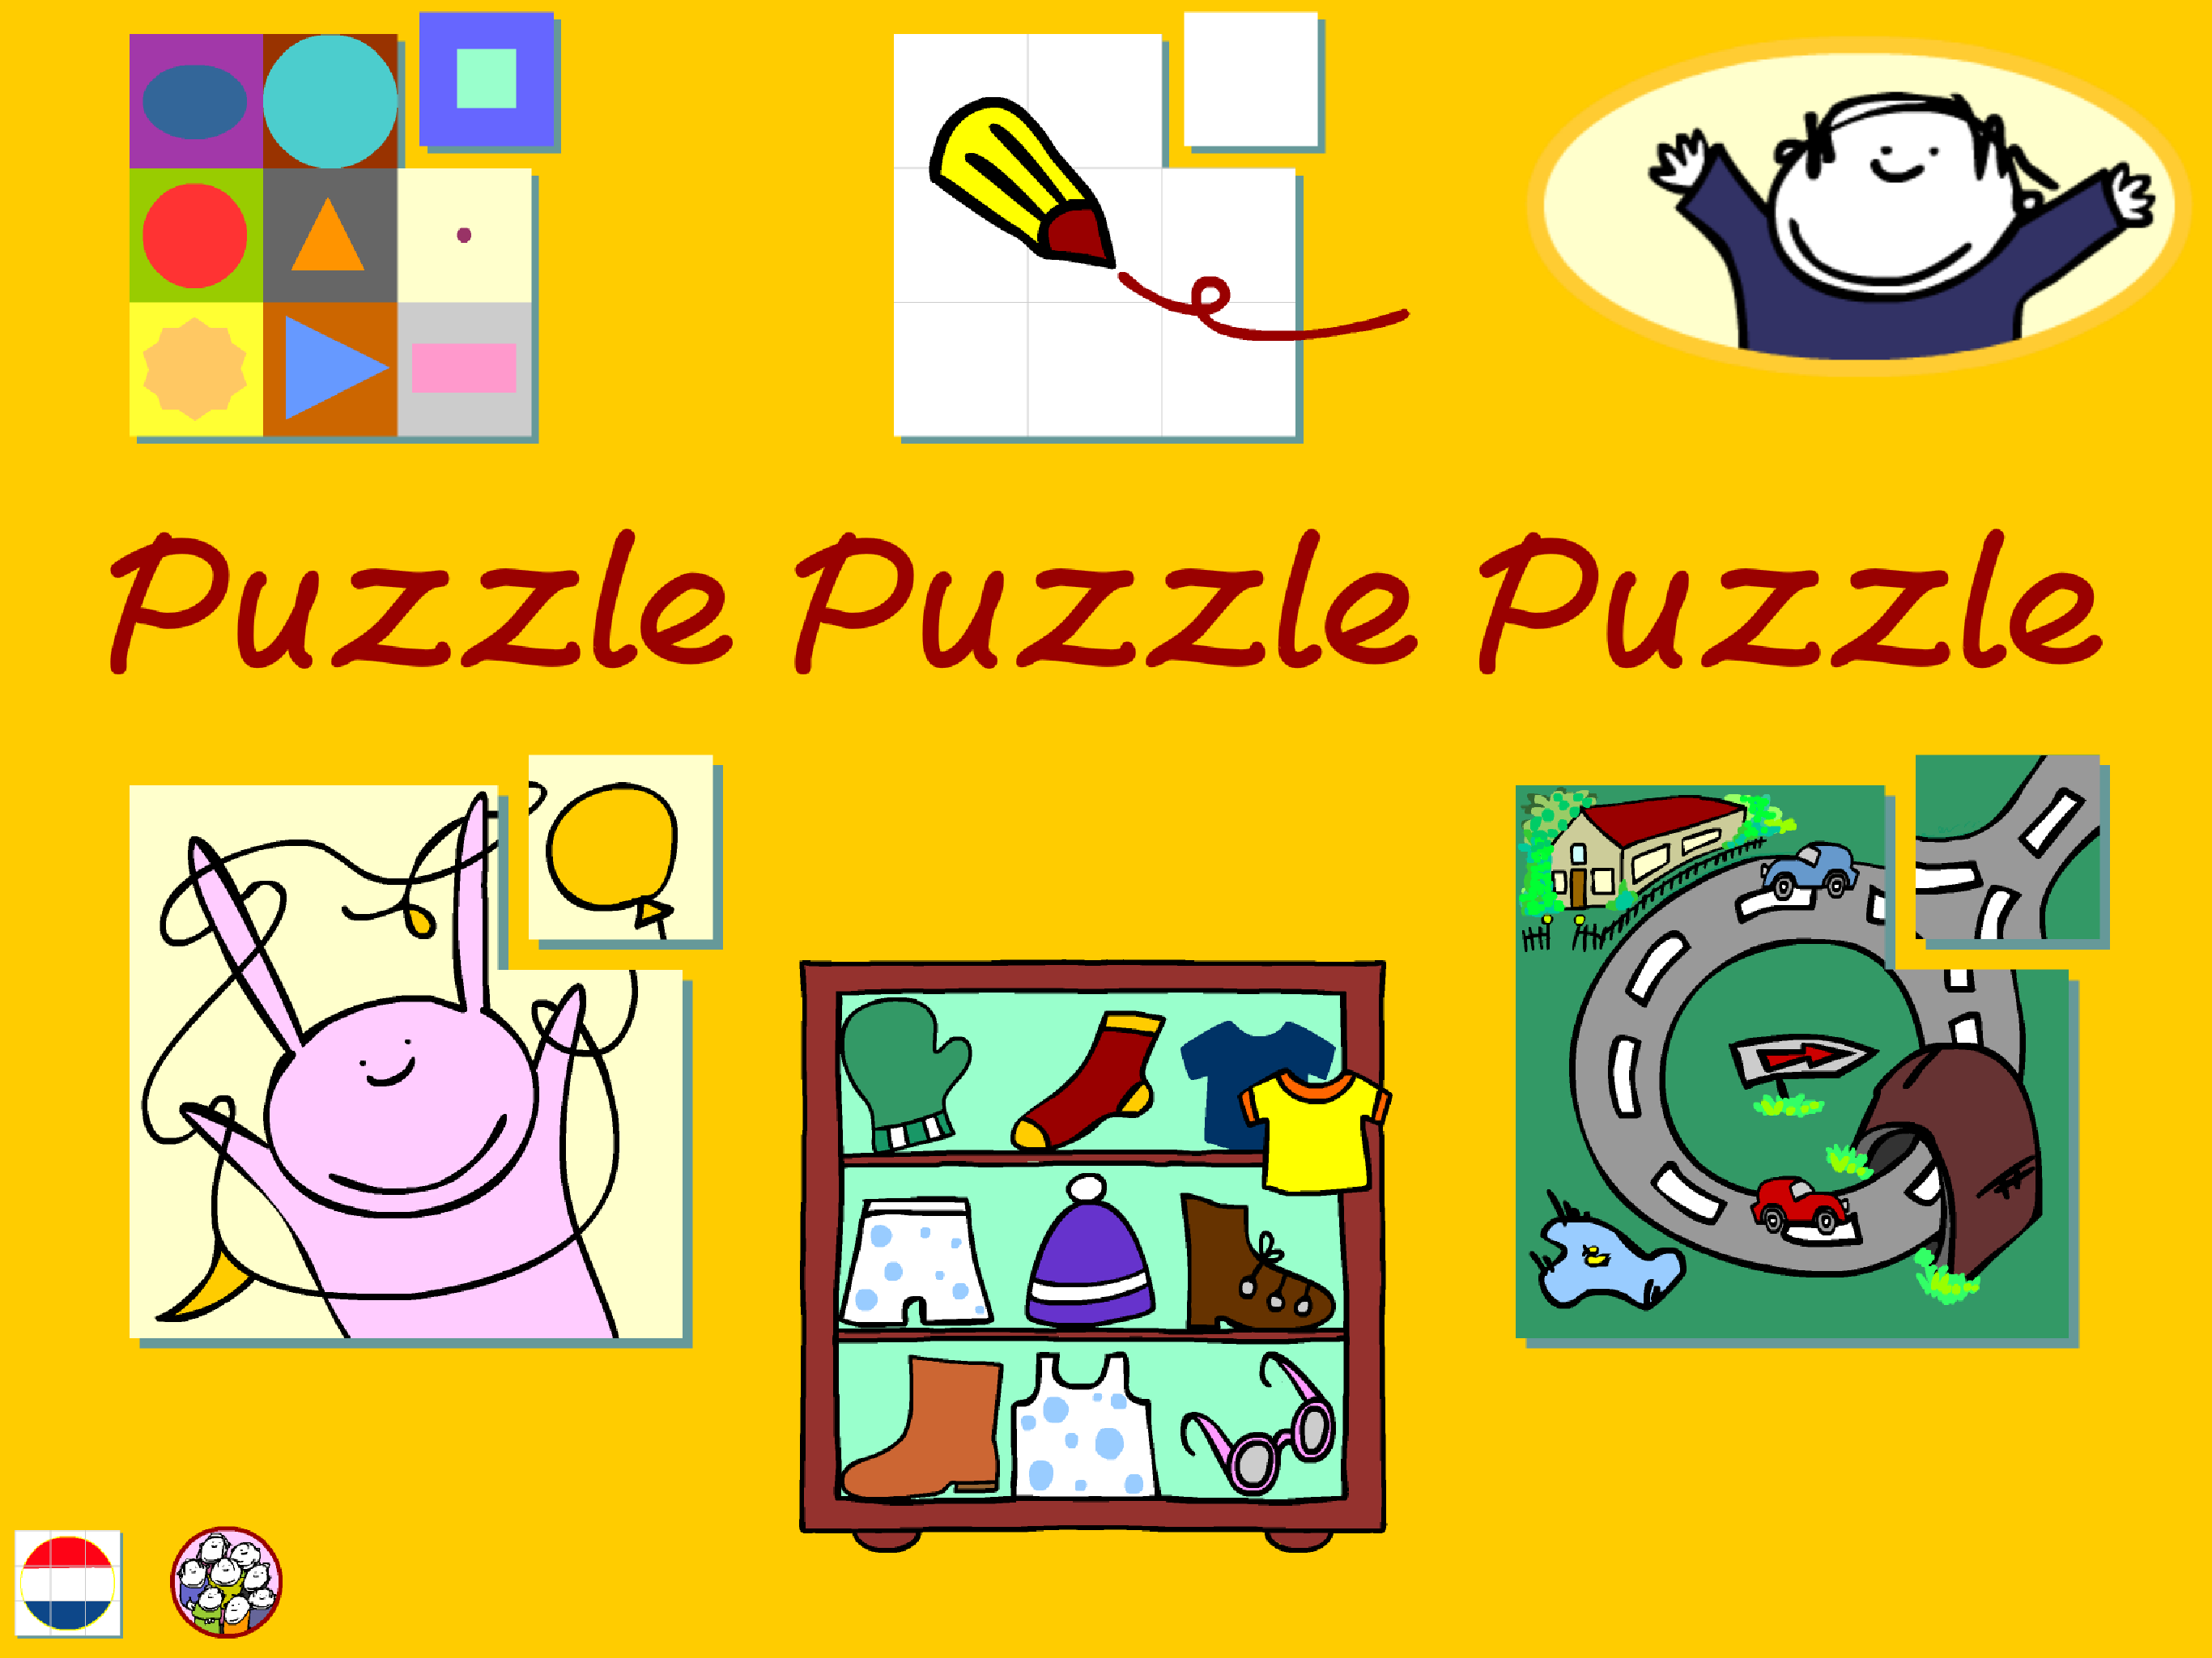 PuzzlePuzzlePuzzle